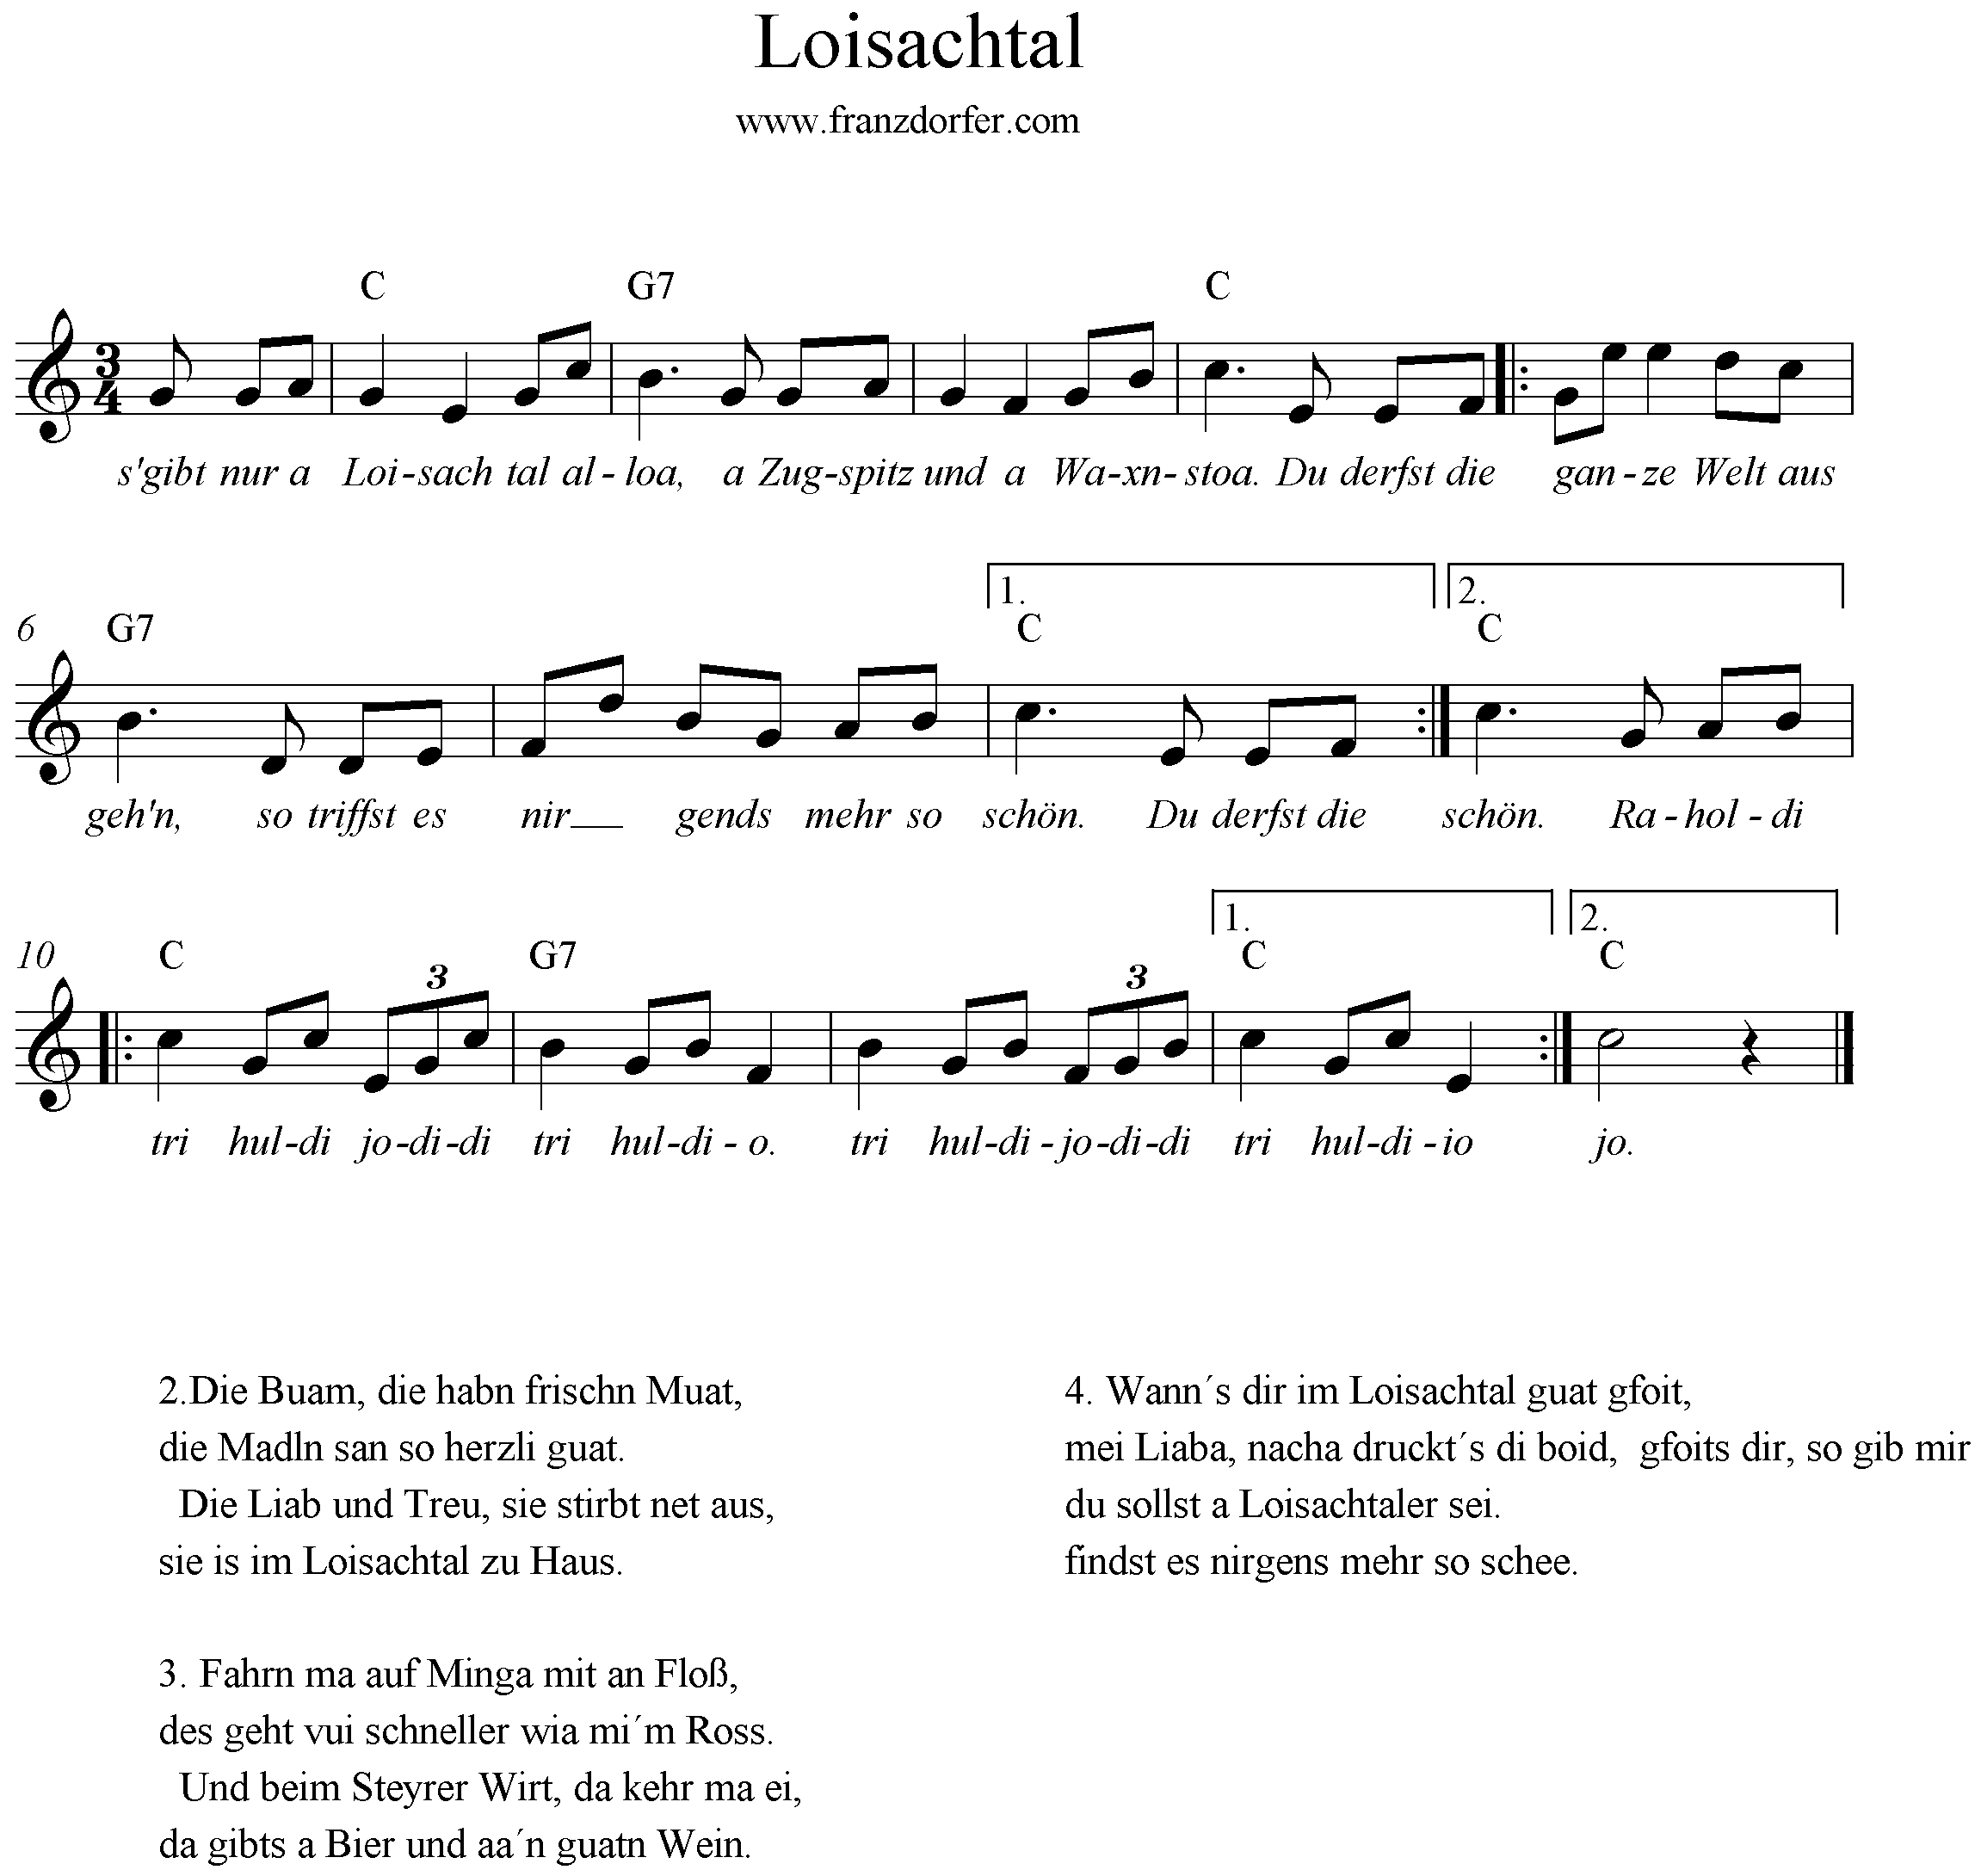 Noten , Text und Akkorde vom Lied Loisachtal